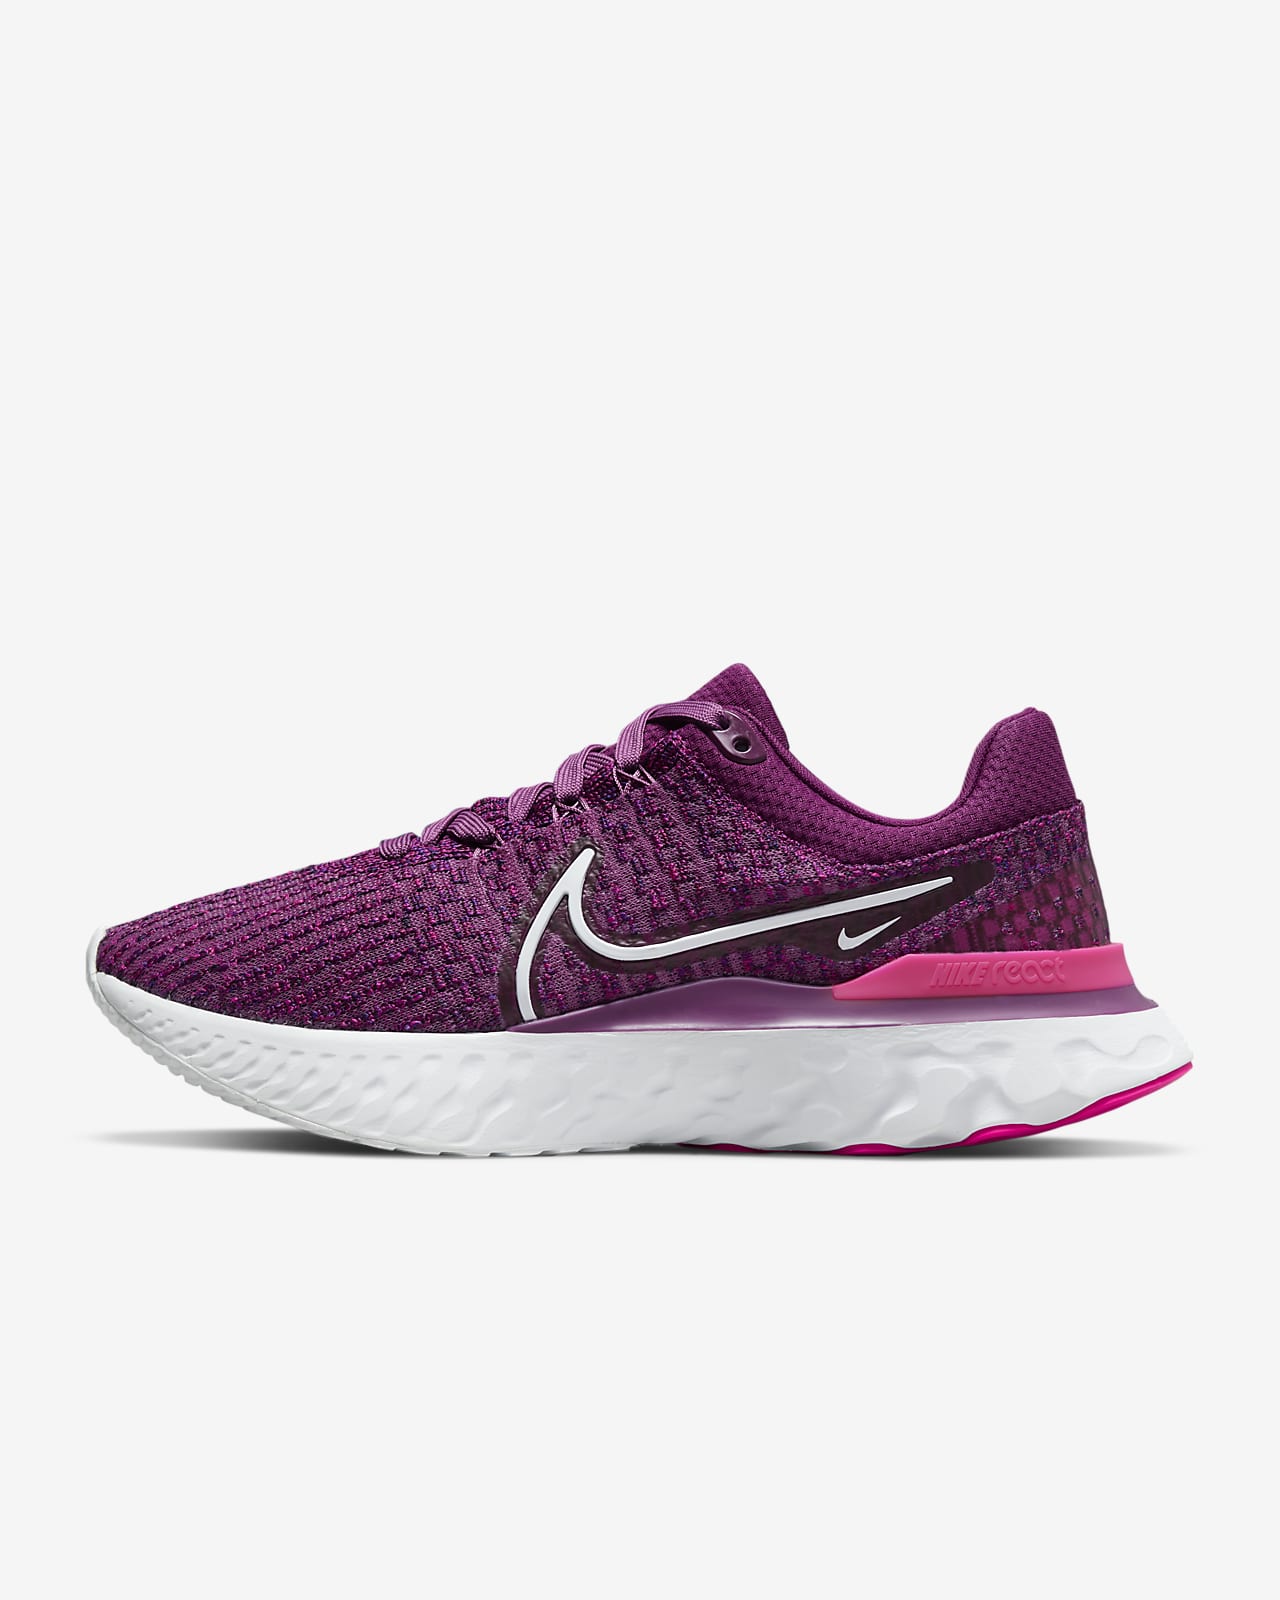 Γυναικεία παπούτσια για τρέξιμο σε δρόμο Nike React Infinity 3